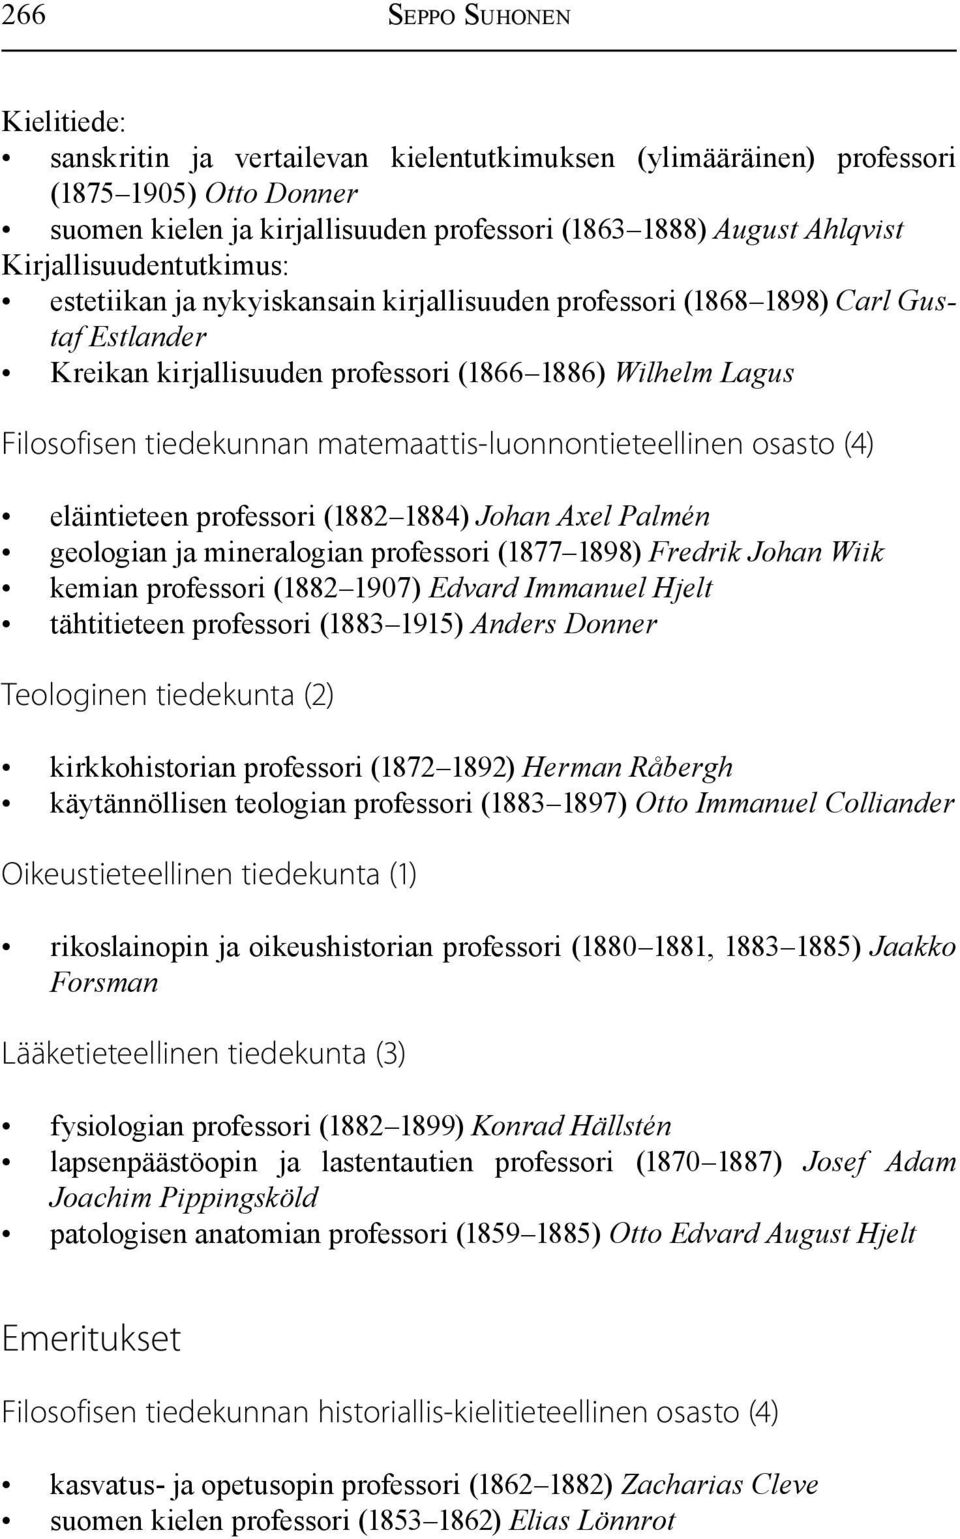 matemaattis-luonnontieteellinen osasto (4) eläintieteen professori (1882 1884) Johan Axel Palmén geologian ja mineralogian professori (1877 1898) Fredrik Johan Wiik kemian professori (1882 1907)